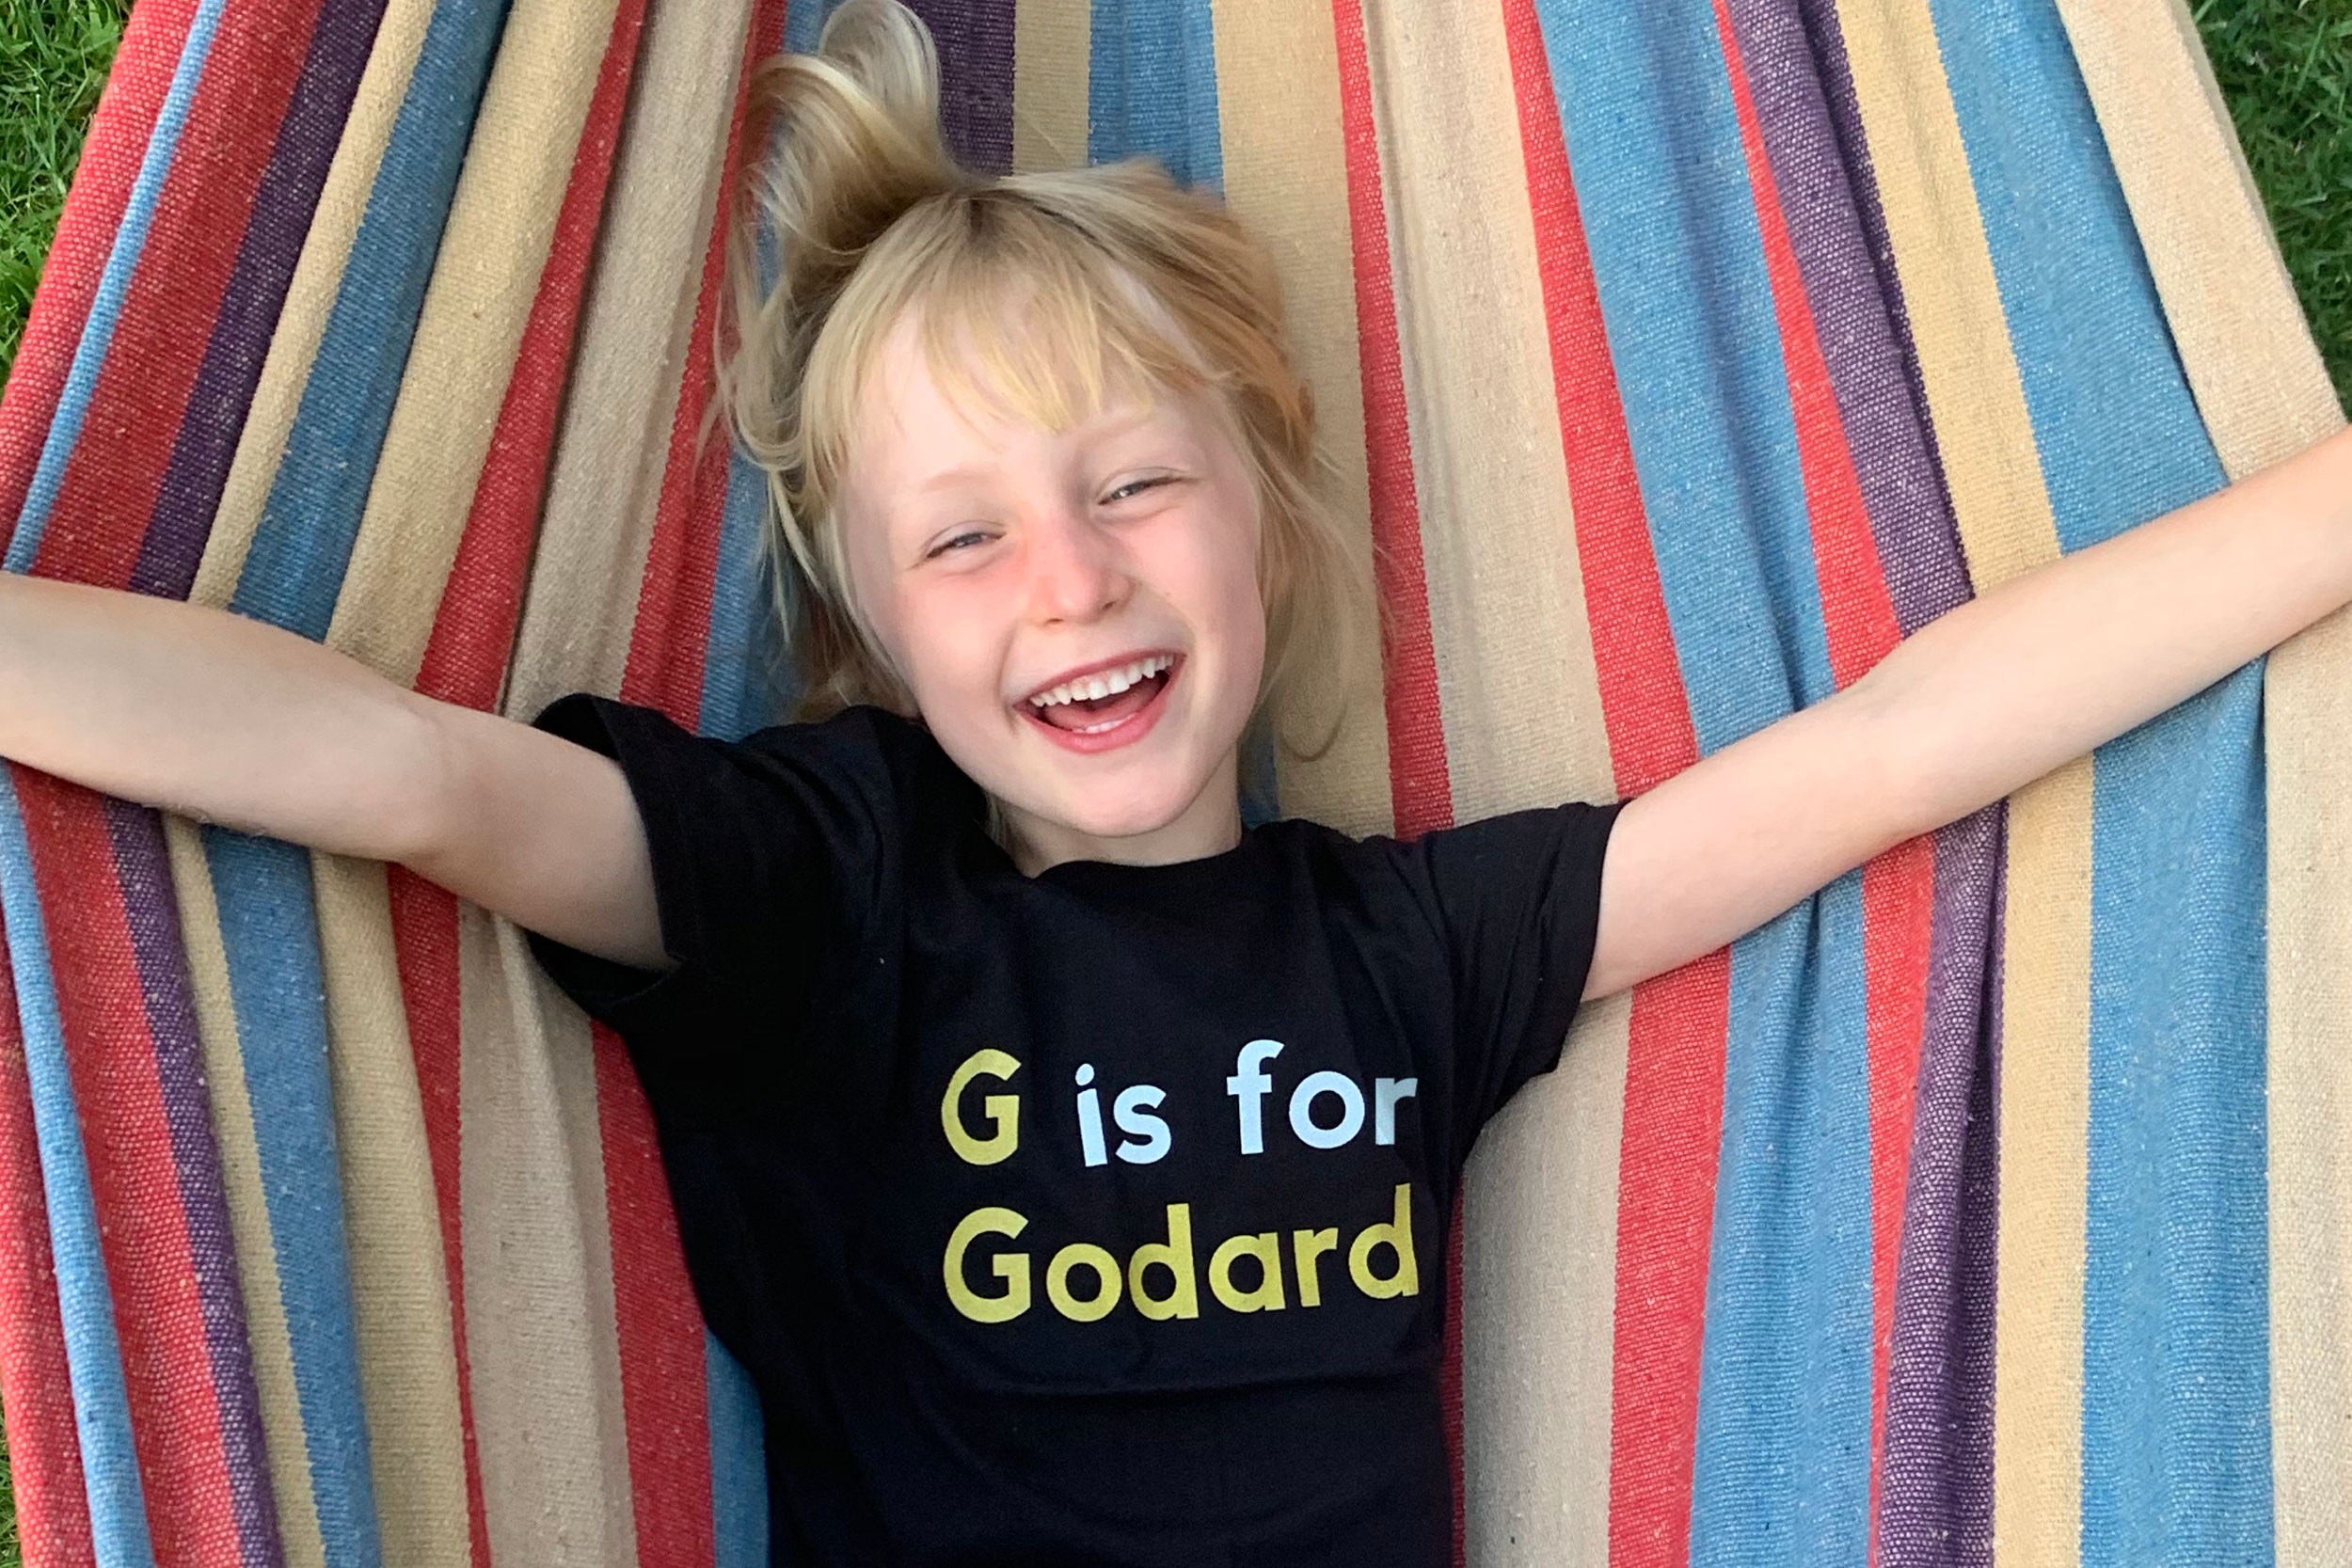 “G Is For Godard” T-shirt